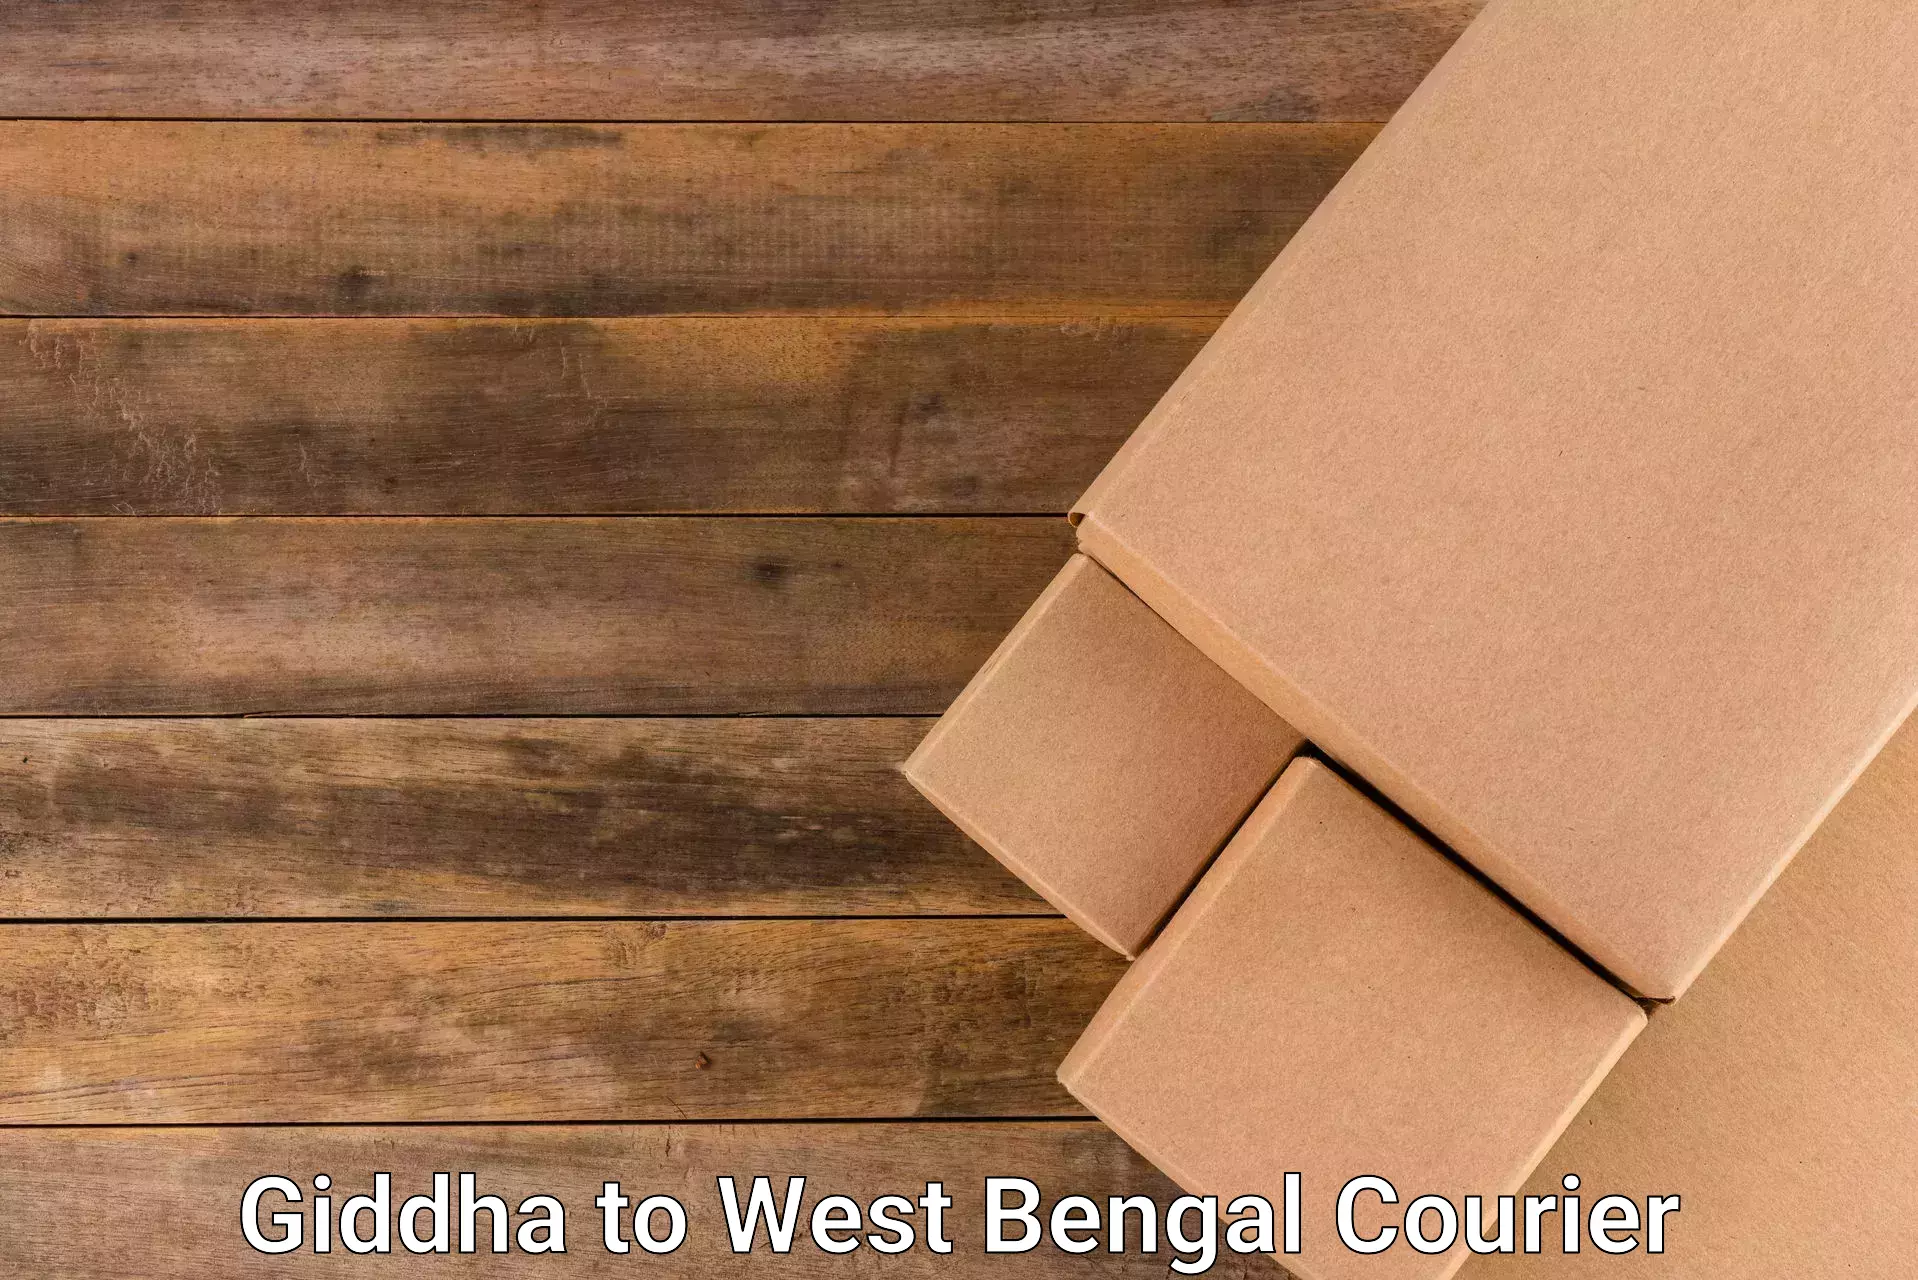 Custom courier packaging Giddha to Burdwan